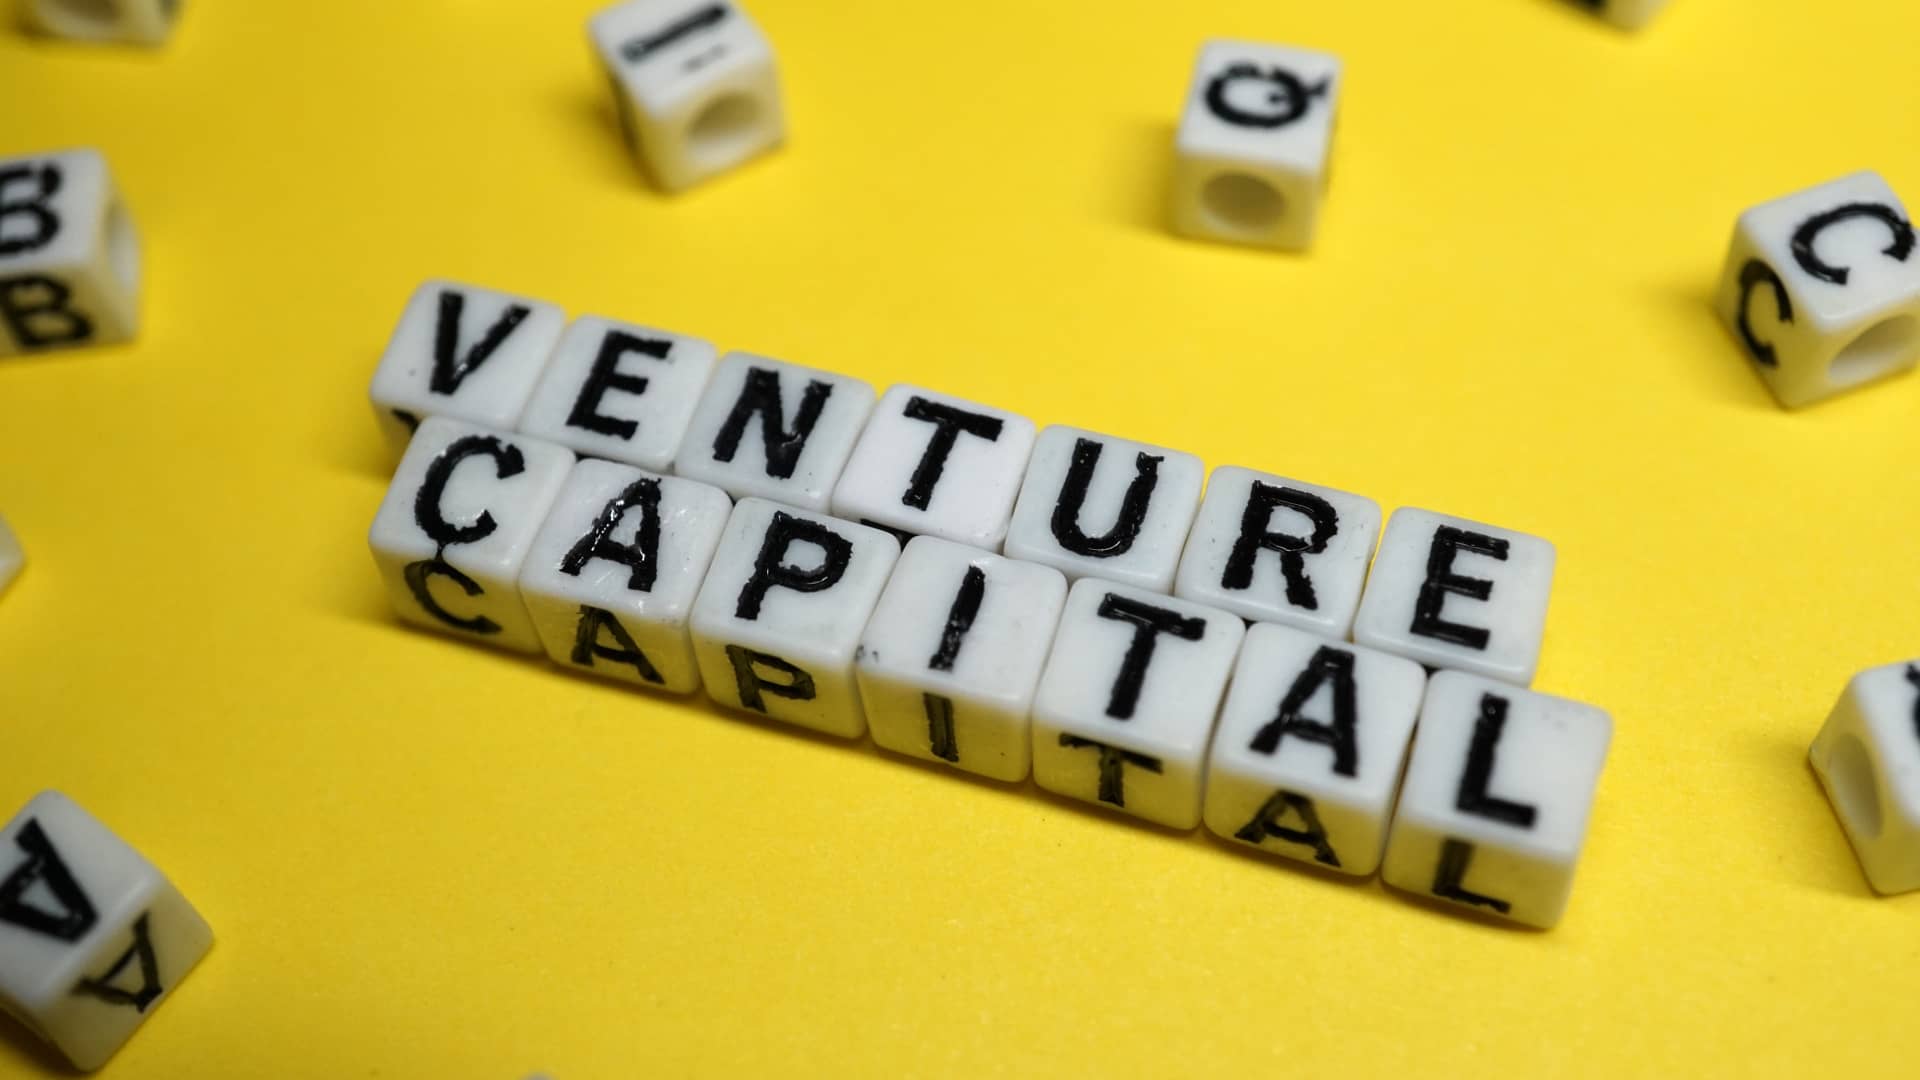 Cuentas de pulsera con letras, en las cuentas centrales se pueden leer las palabras Venture Capital